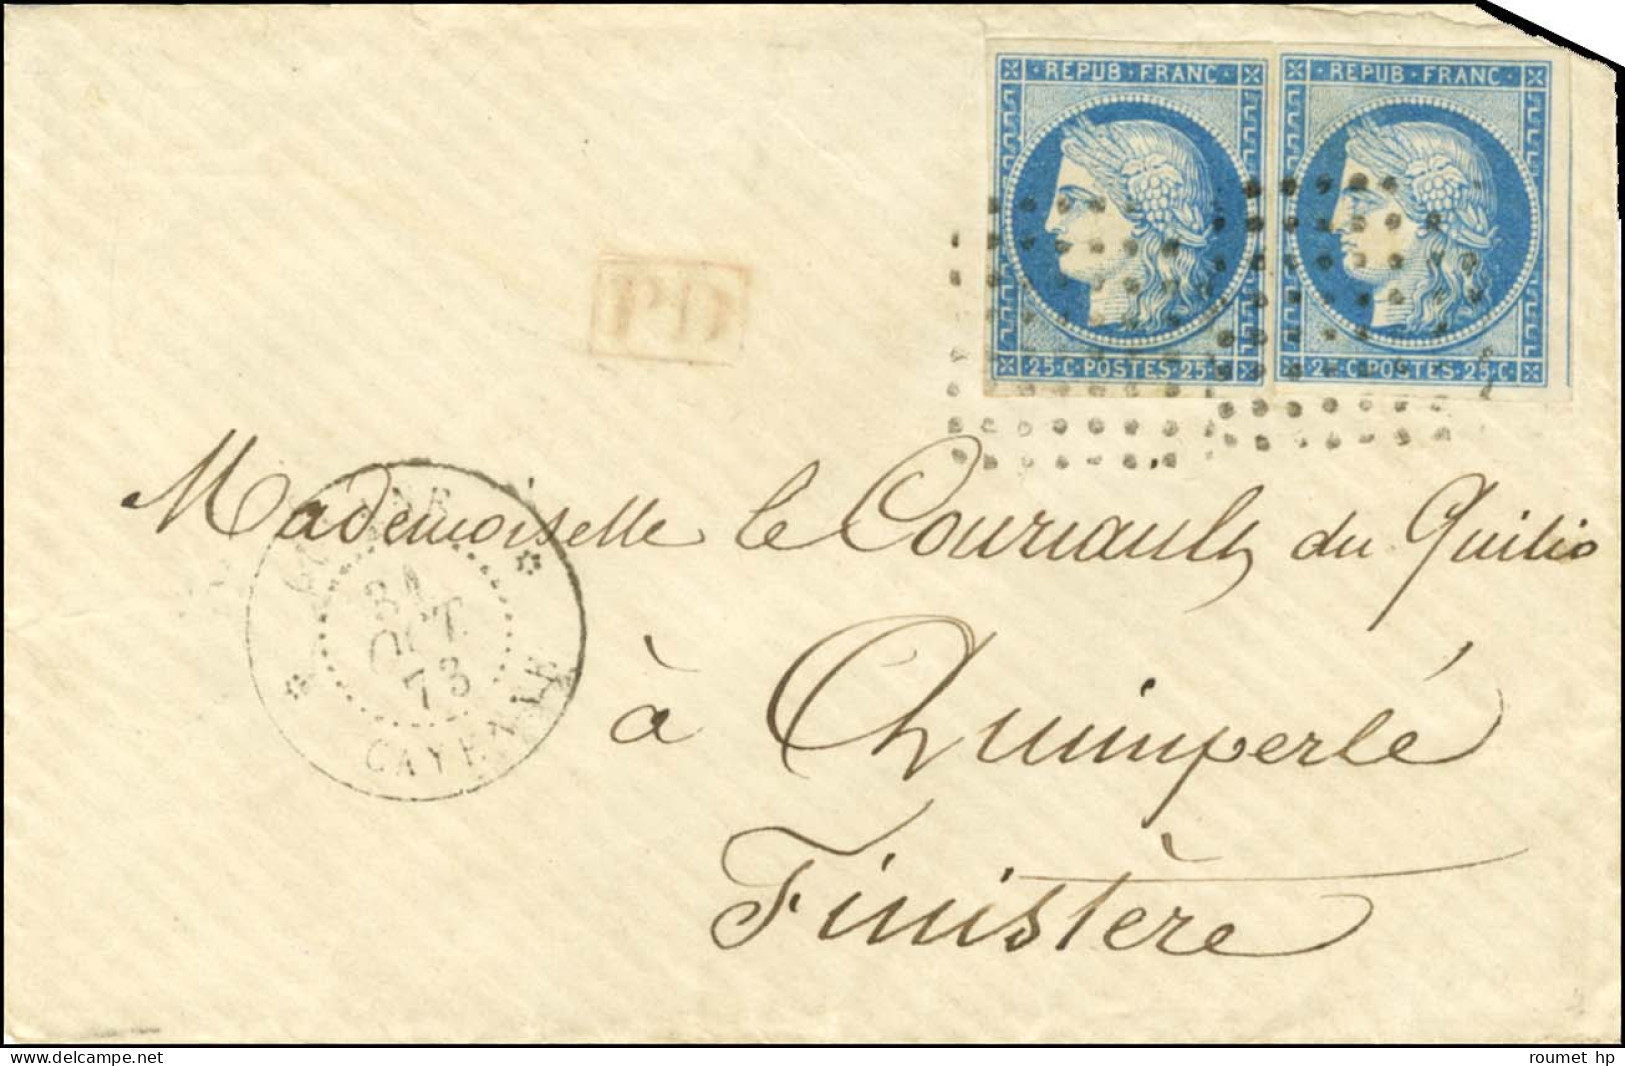 Losange / Col. Gen. N° 23 (2) Càd GUYANE / CAYENNE Sur Lettre Pour Quimperlé. 1873. - TB / SUP. - R. - Maritieme Post